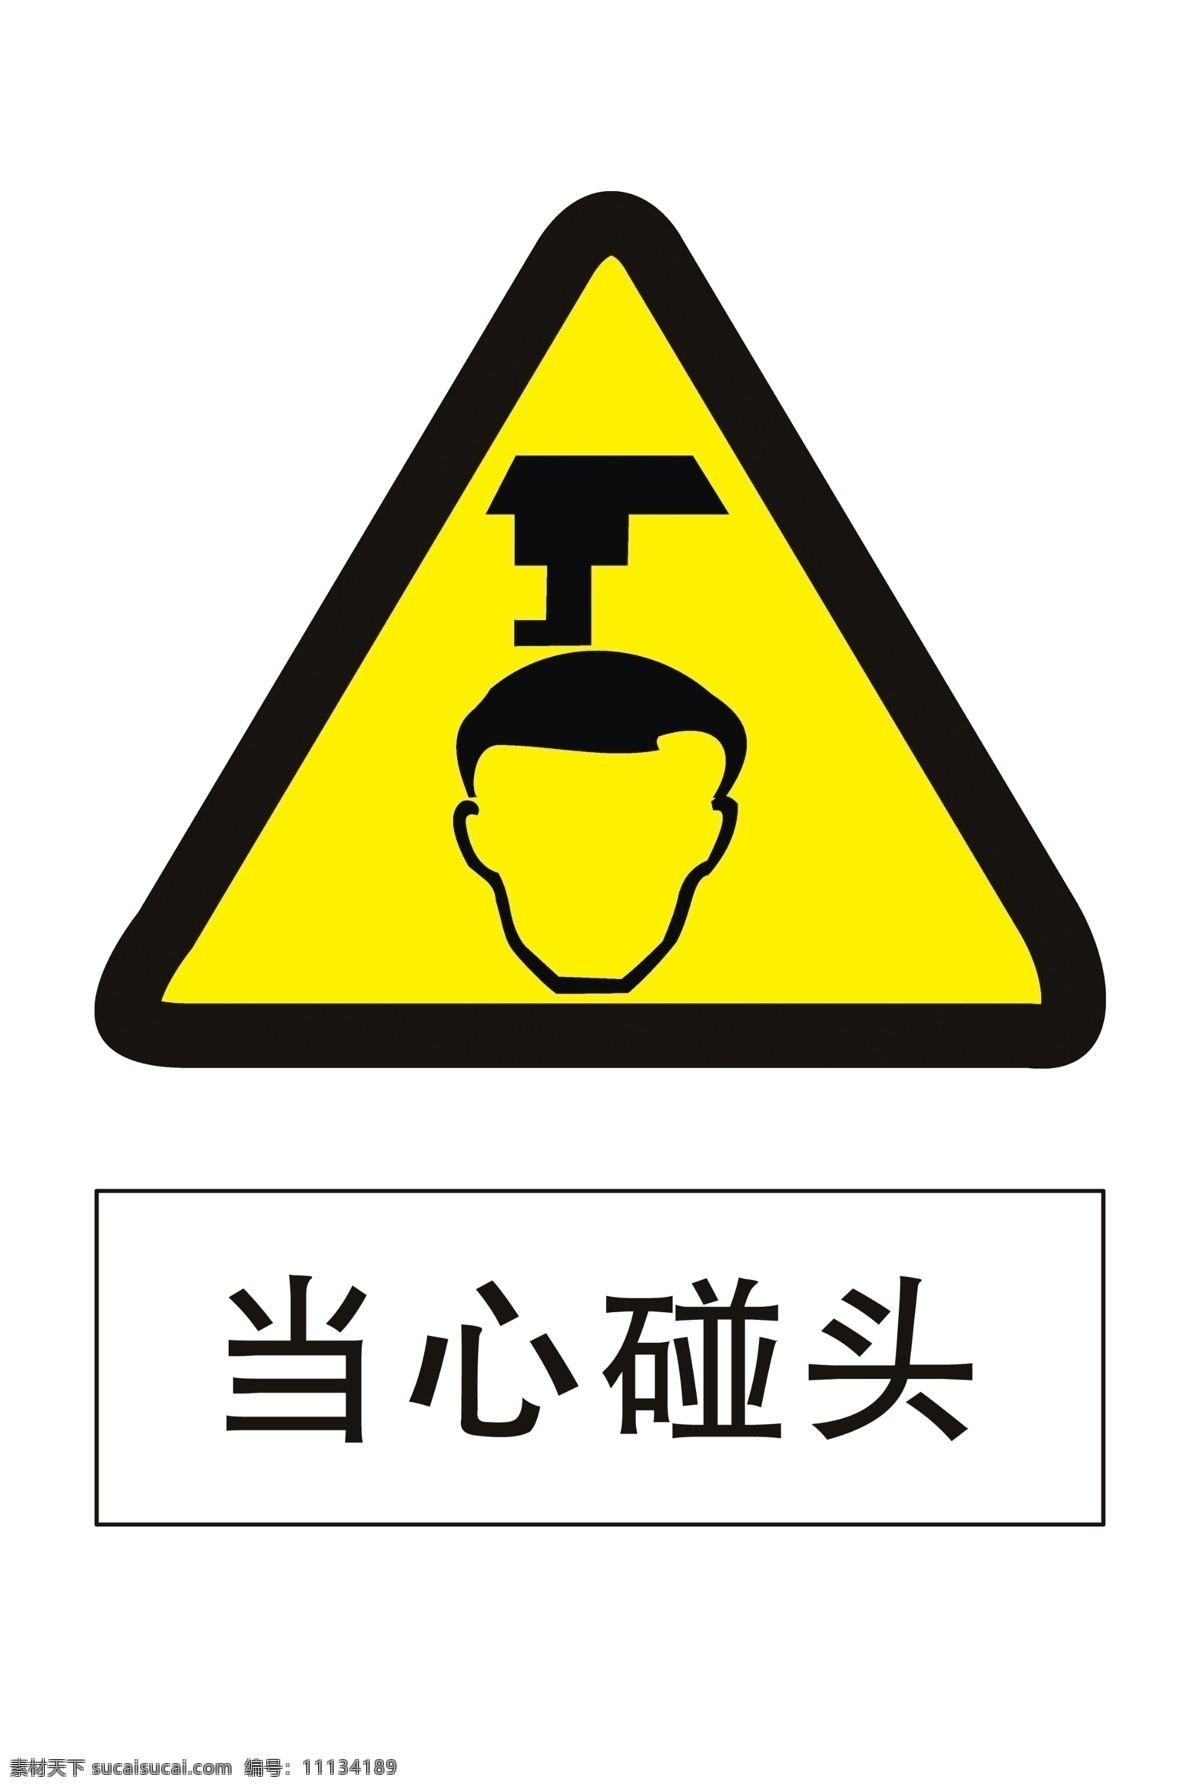 当心碰头 小心碰头 注意碰头 安全生产标识 安全生产标示 安全标识